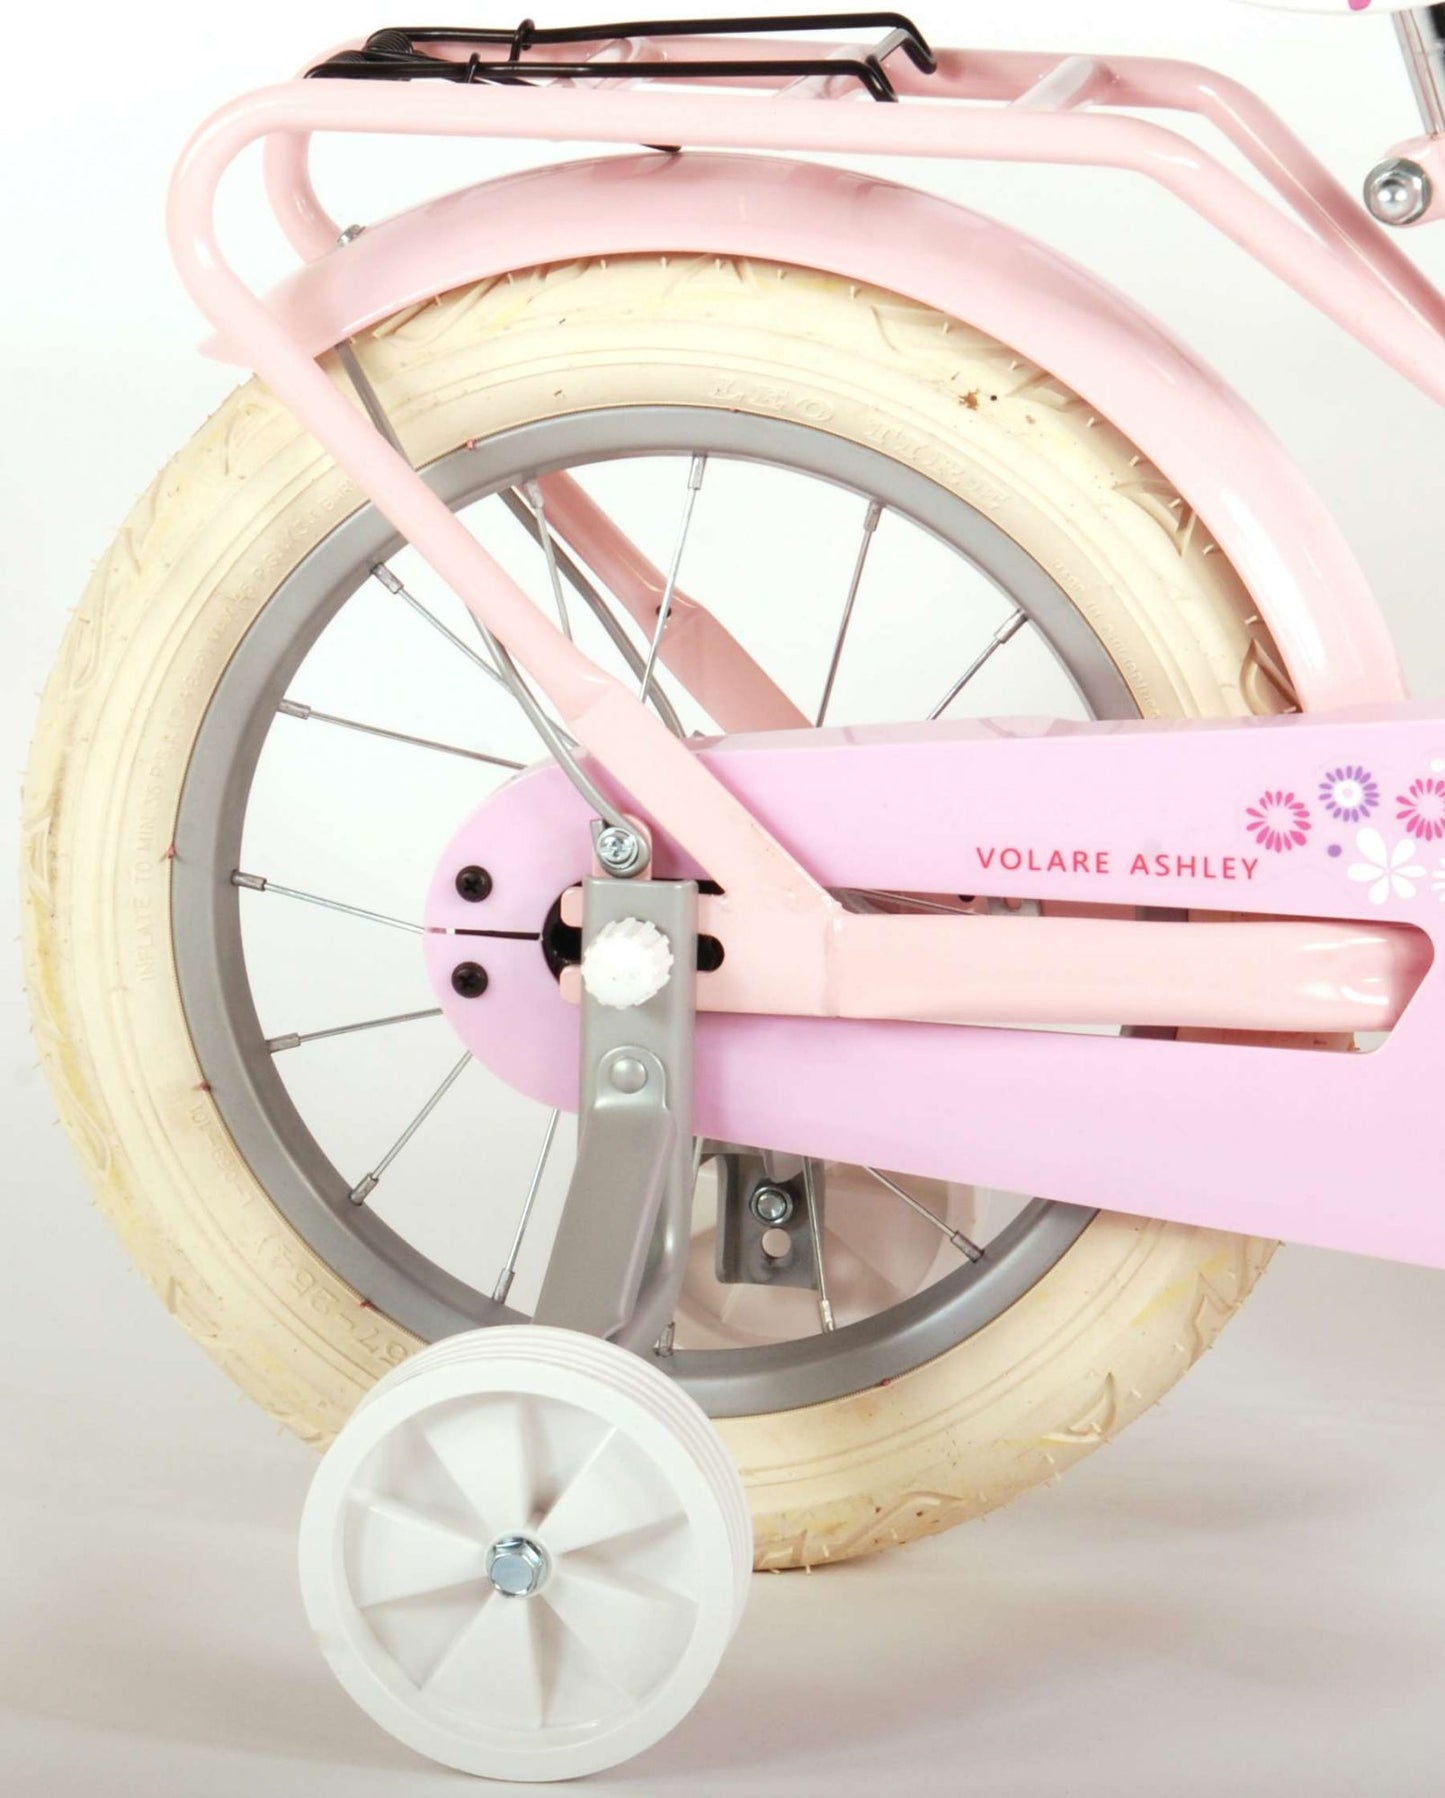 Bicycle per bambini di Vlatare Ashley - Girls - 14 pollici - Rosa - 95% assemblato